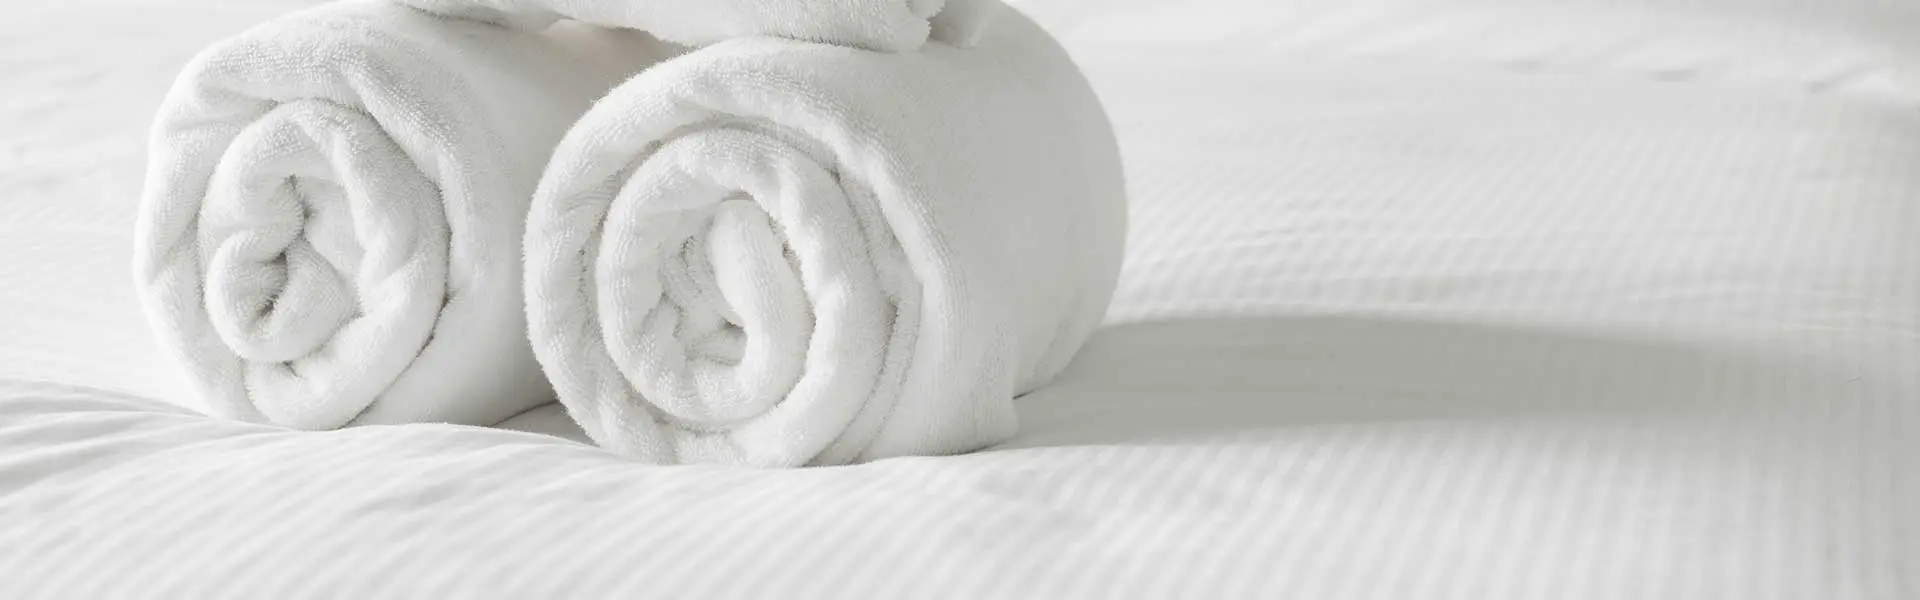 toallas de moda - Qué toallas usan en los hoteles